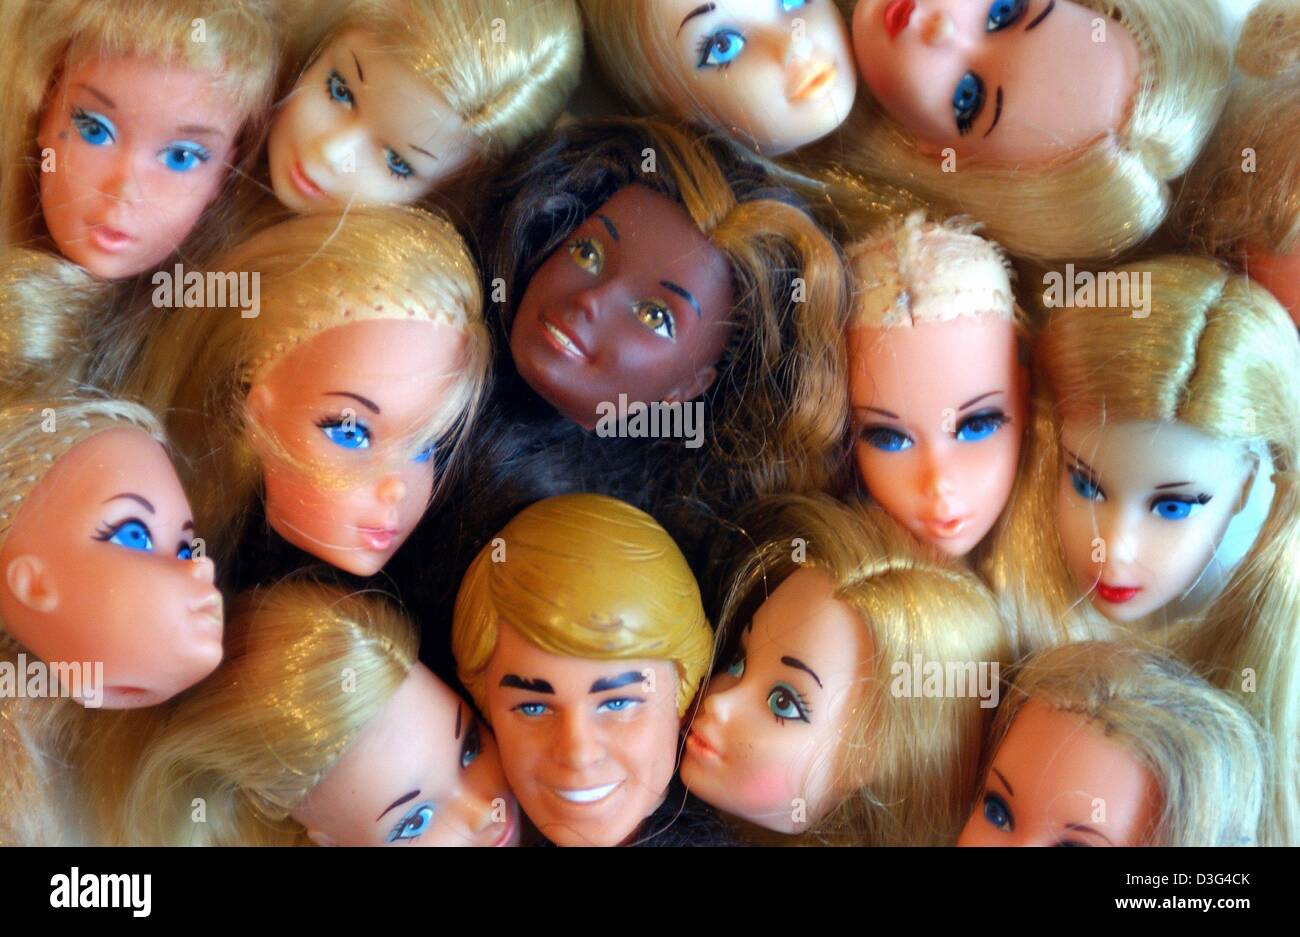 Dpa) - Un grupo de cabeza de repuesto piezas para Barbie y Ken muñecas  están fotografiados en Duesseldorf, Alemania, el 30 de enero de 2003. El  auto-proclamado "doctor" Muñeca Barbie Bettina Dorfmann